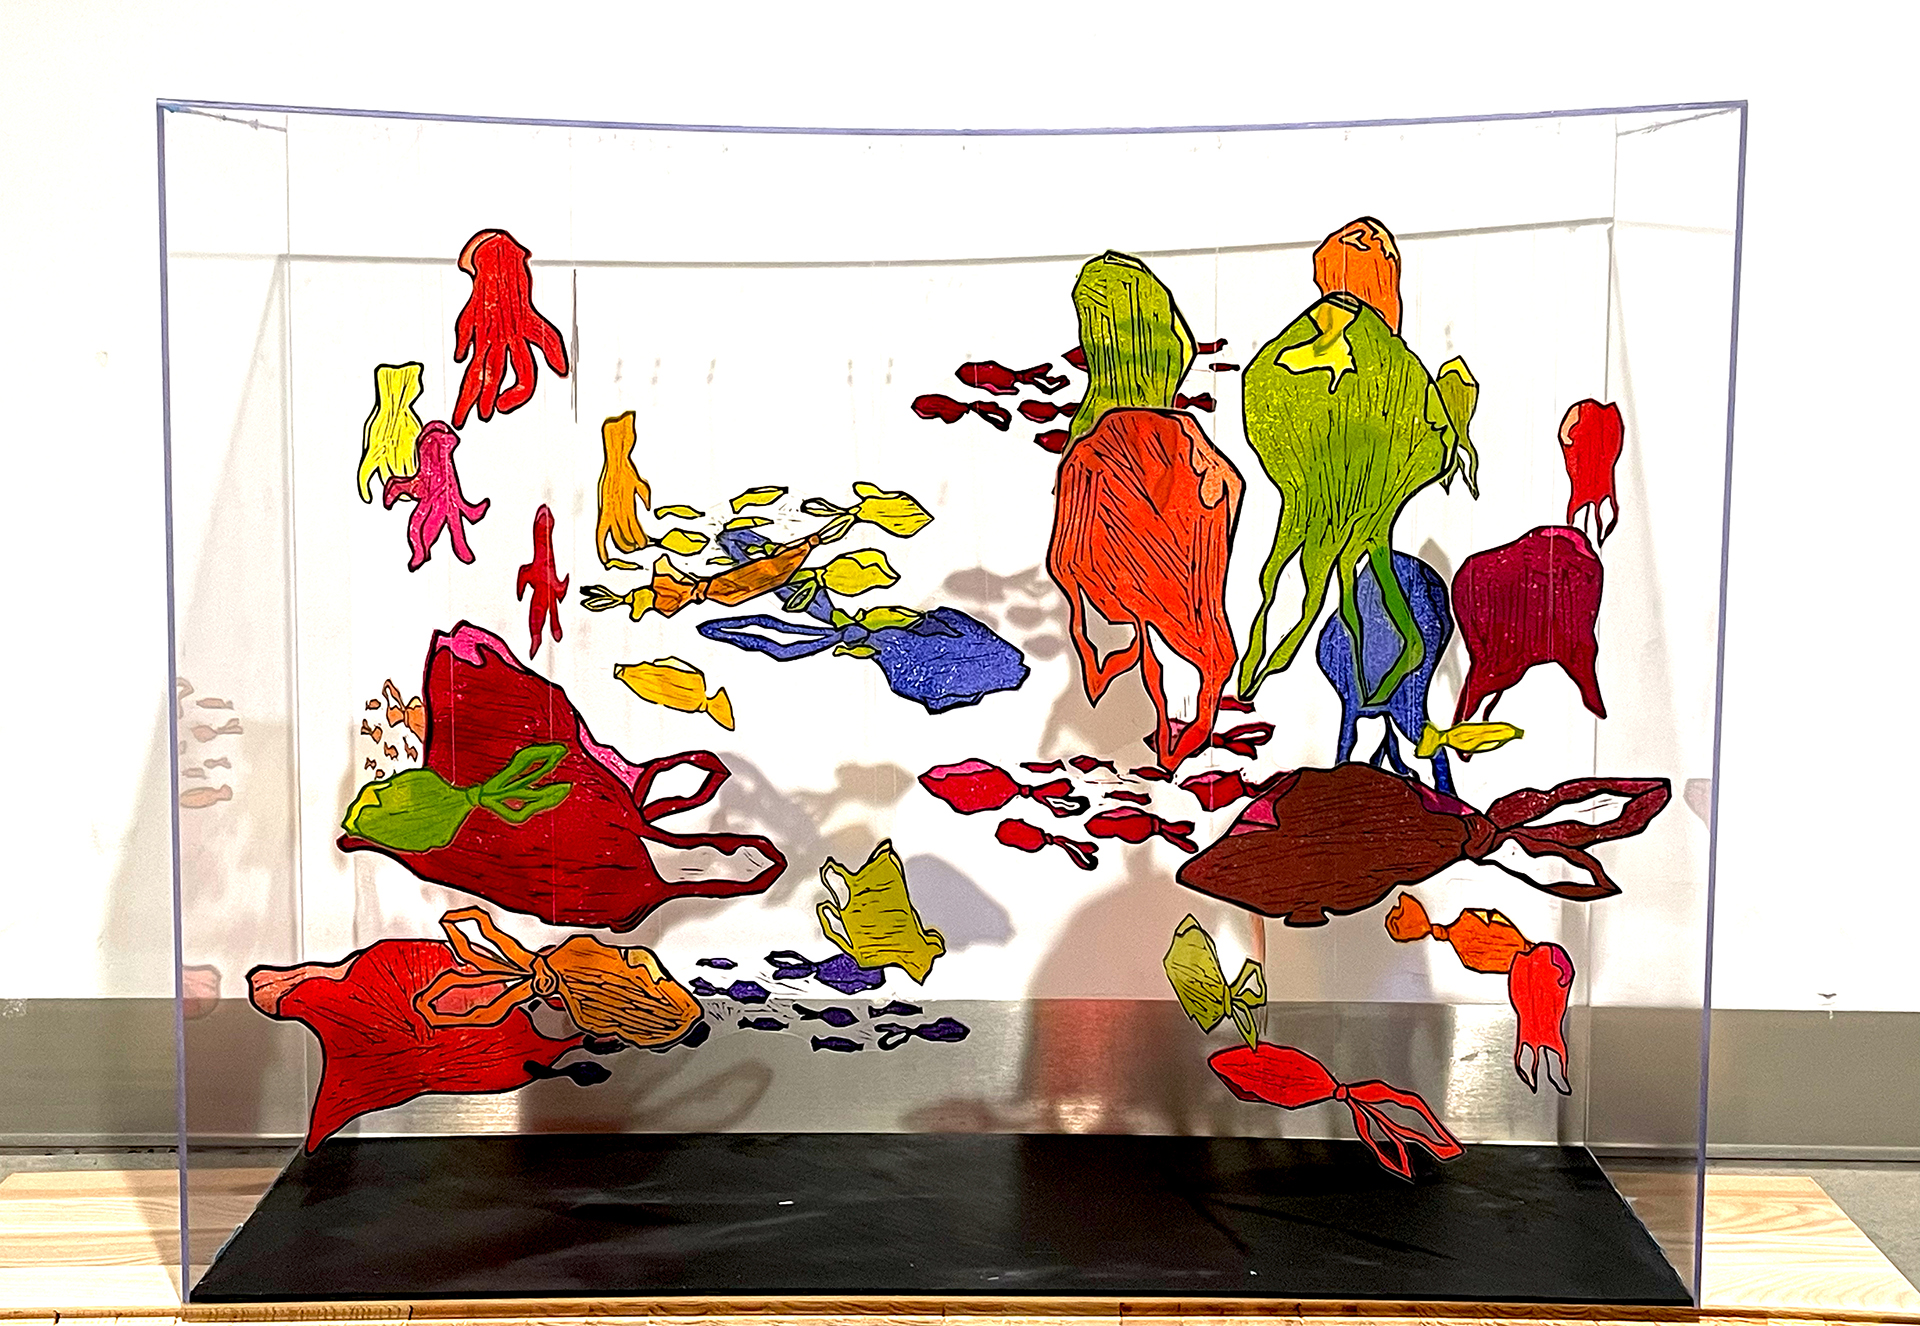 Fotografia przedstawia obiekt w formie akwarium wypełnionego wykonaną linorytem ławicą kolorowych reklamówek w kształtach przypominających ryby